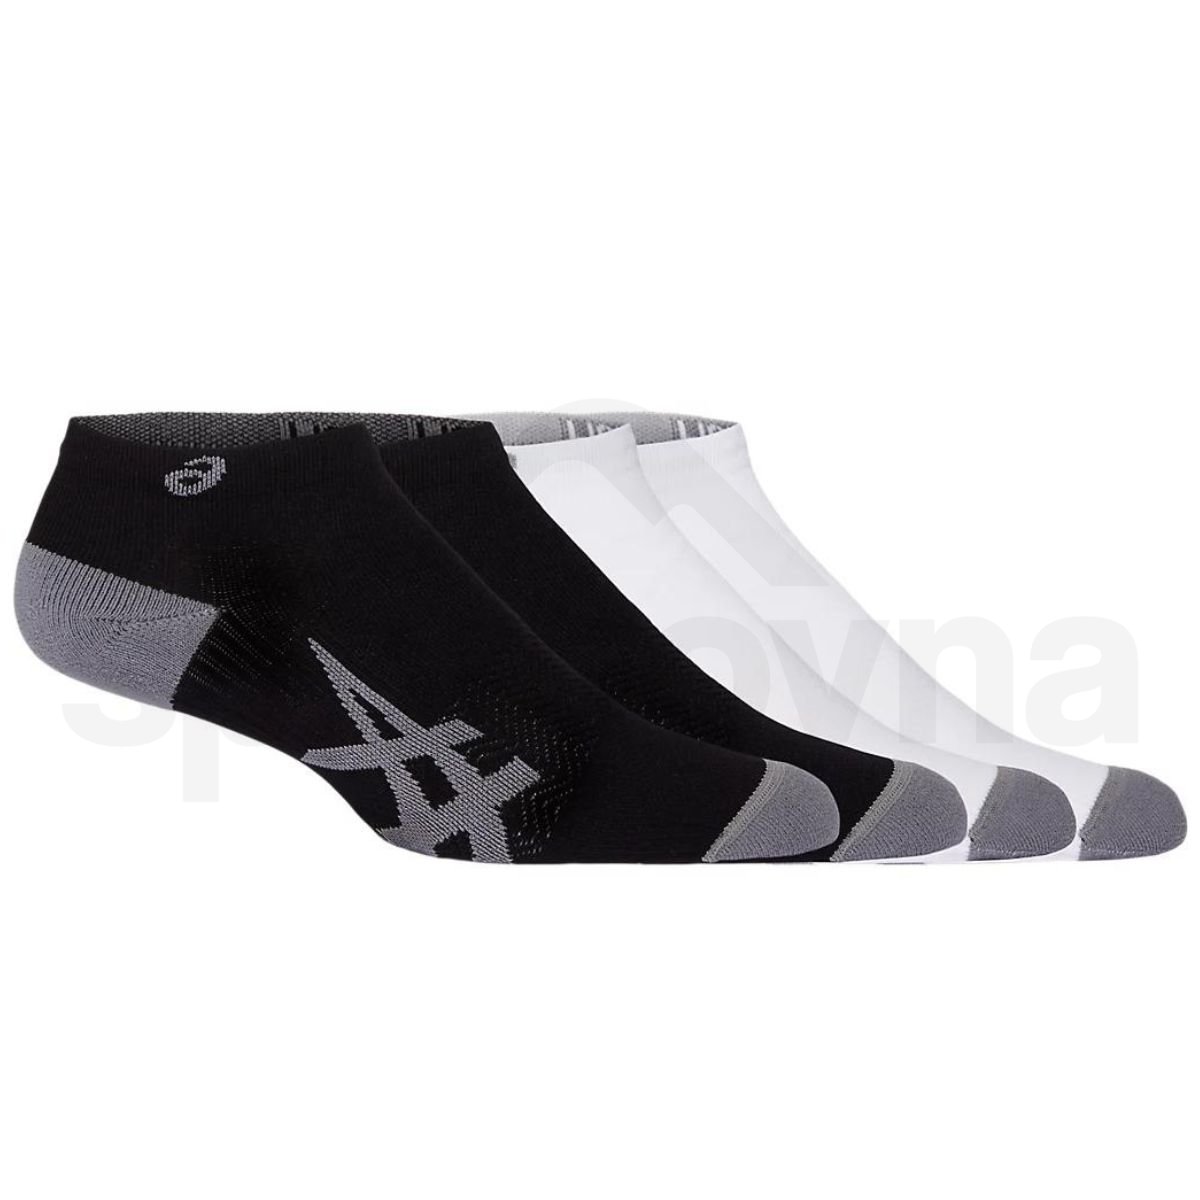 Ponožky Asics 2PPK Light Run Ankle Sock - černá/bílá